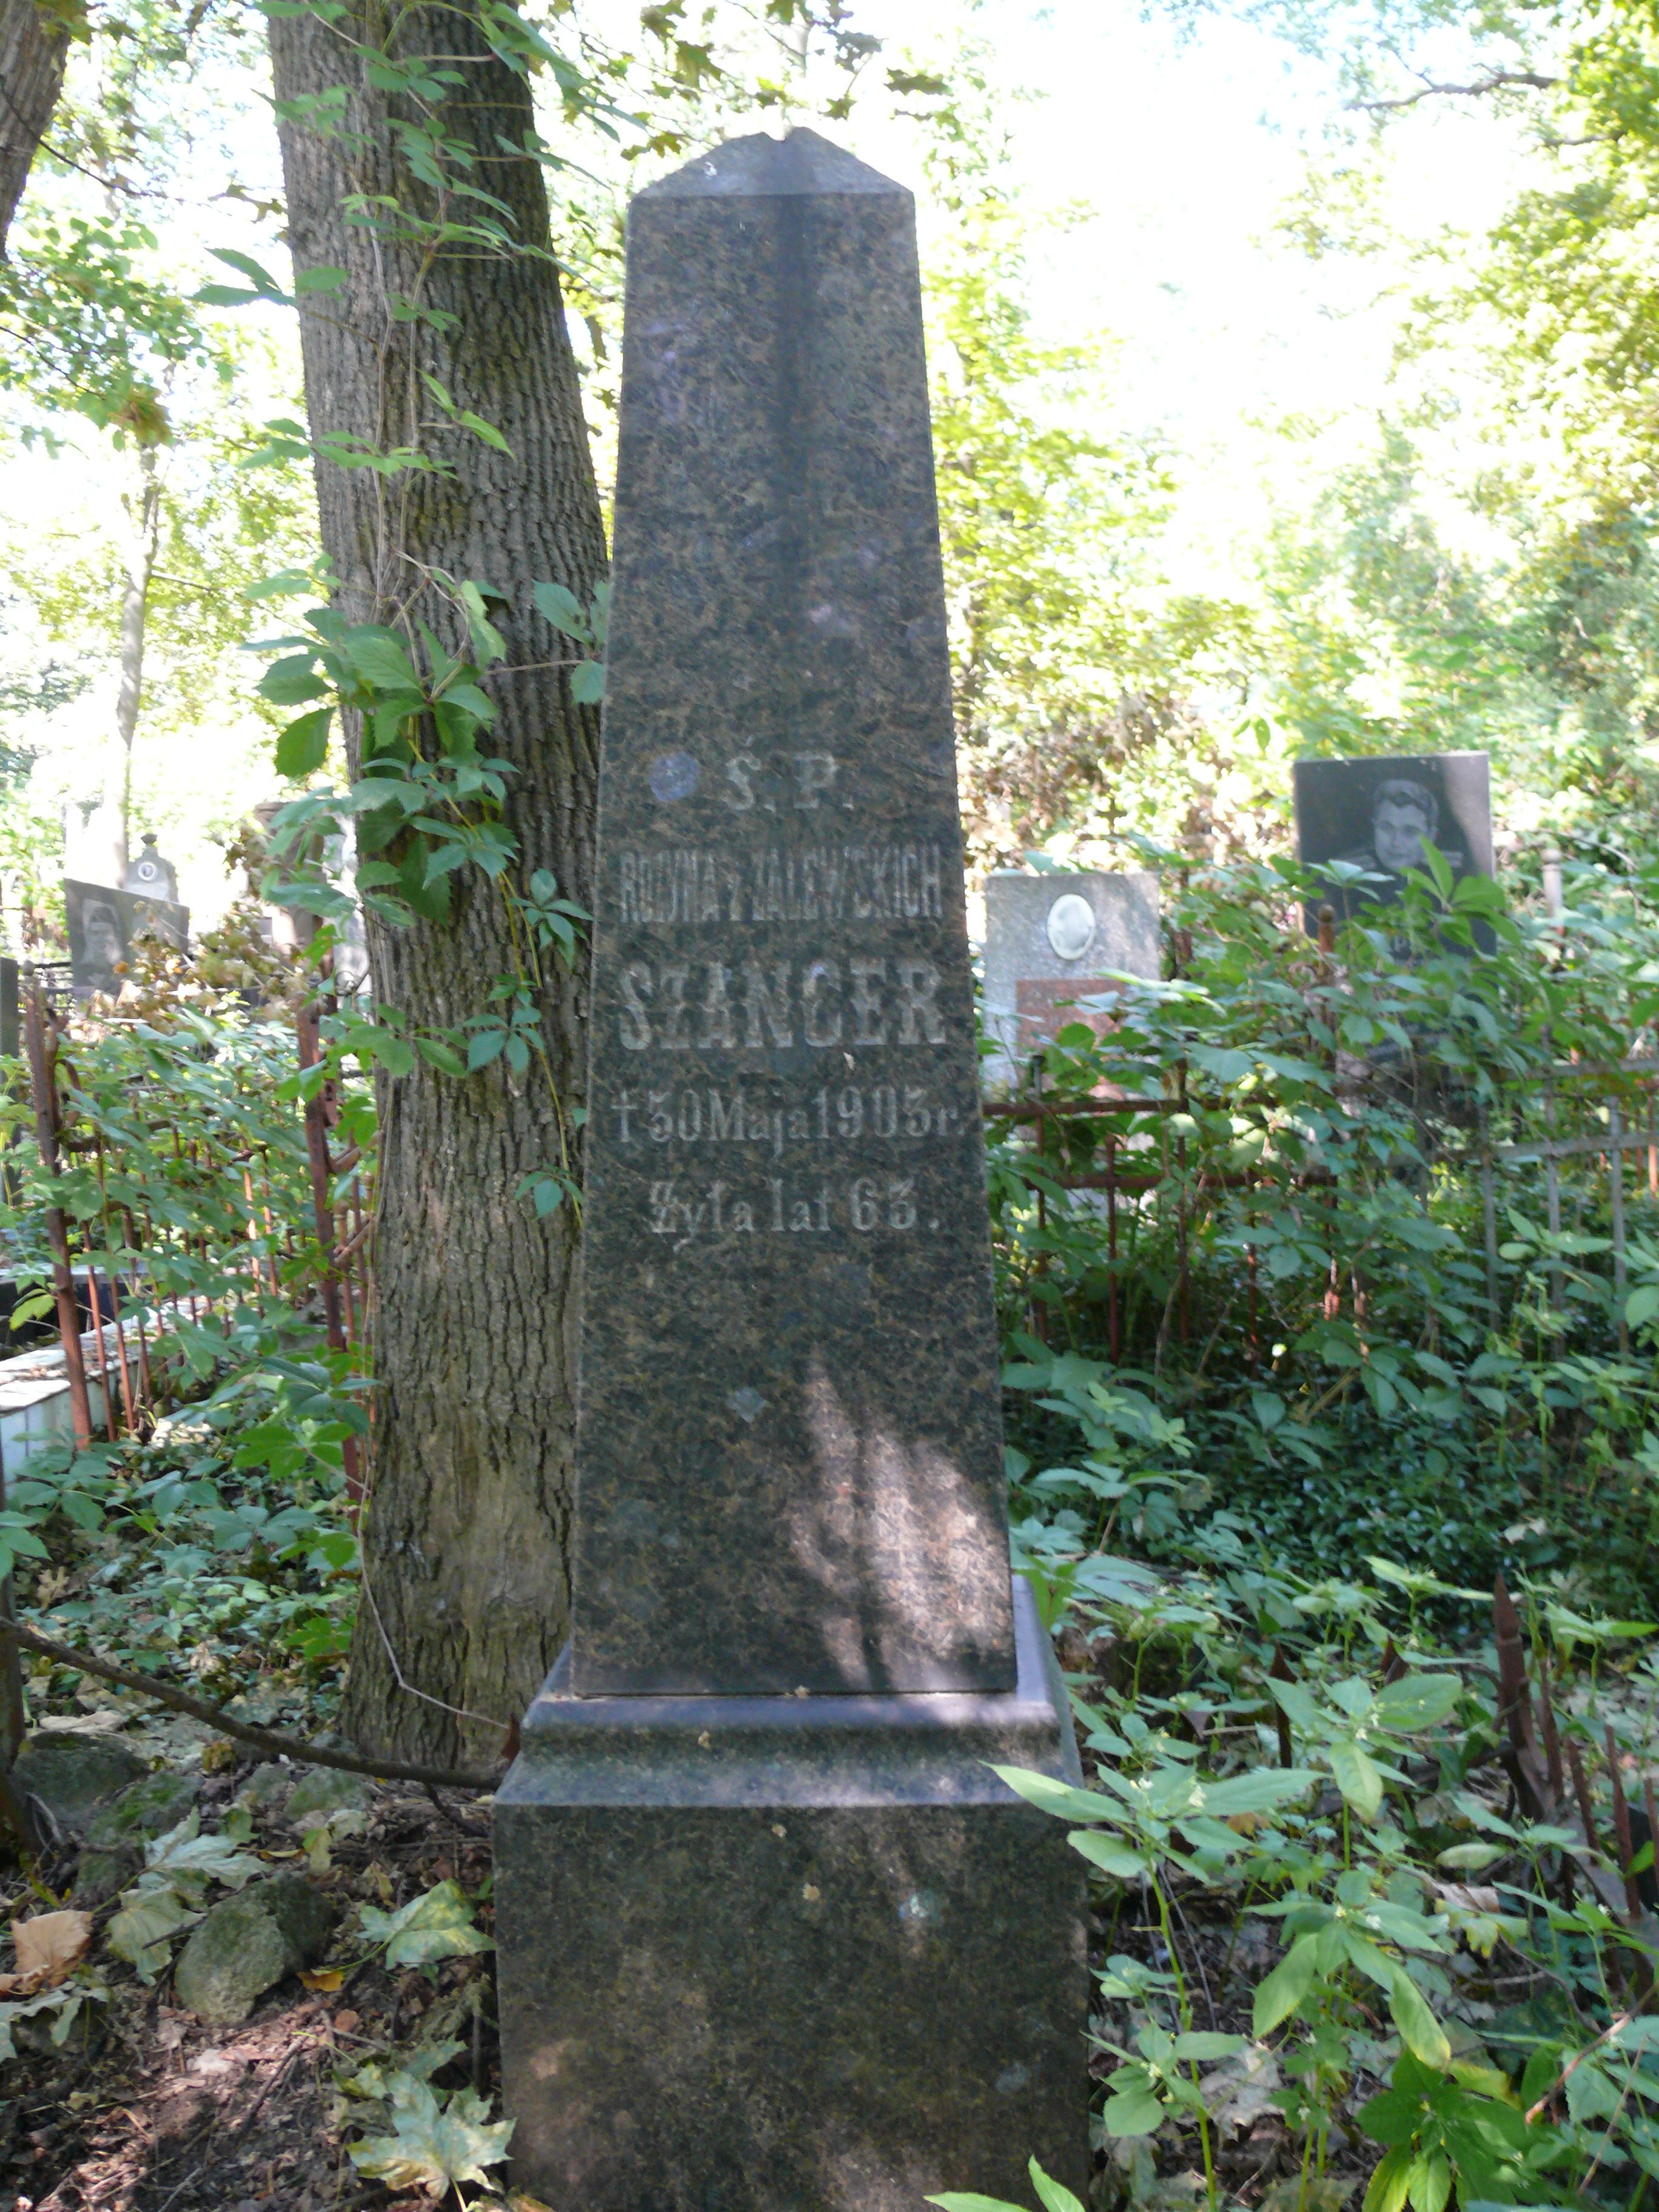 Tombstone of Rozyna Szancer